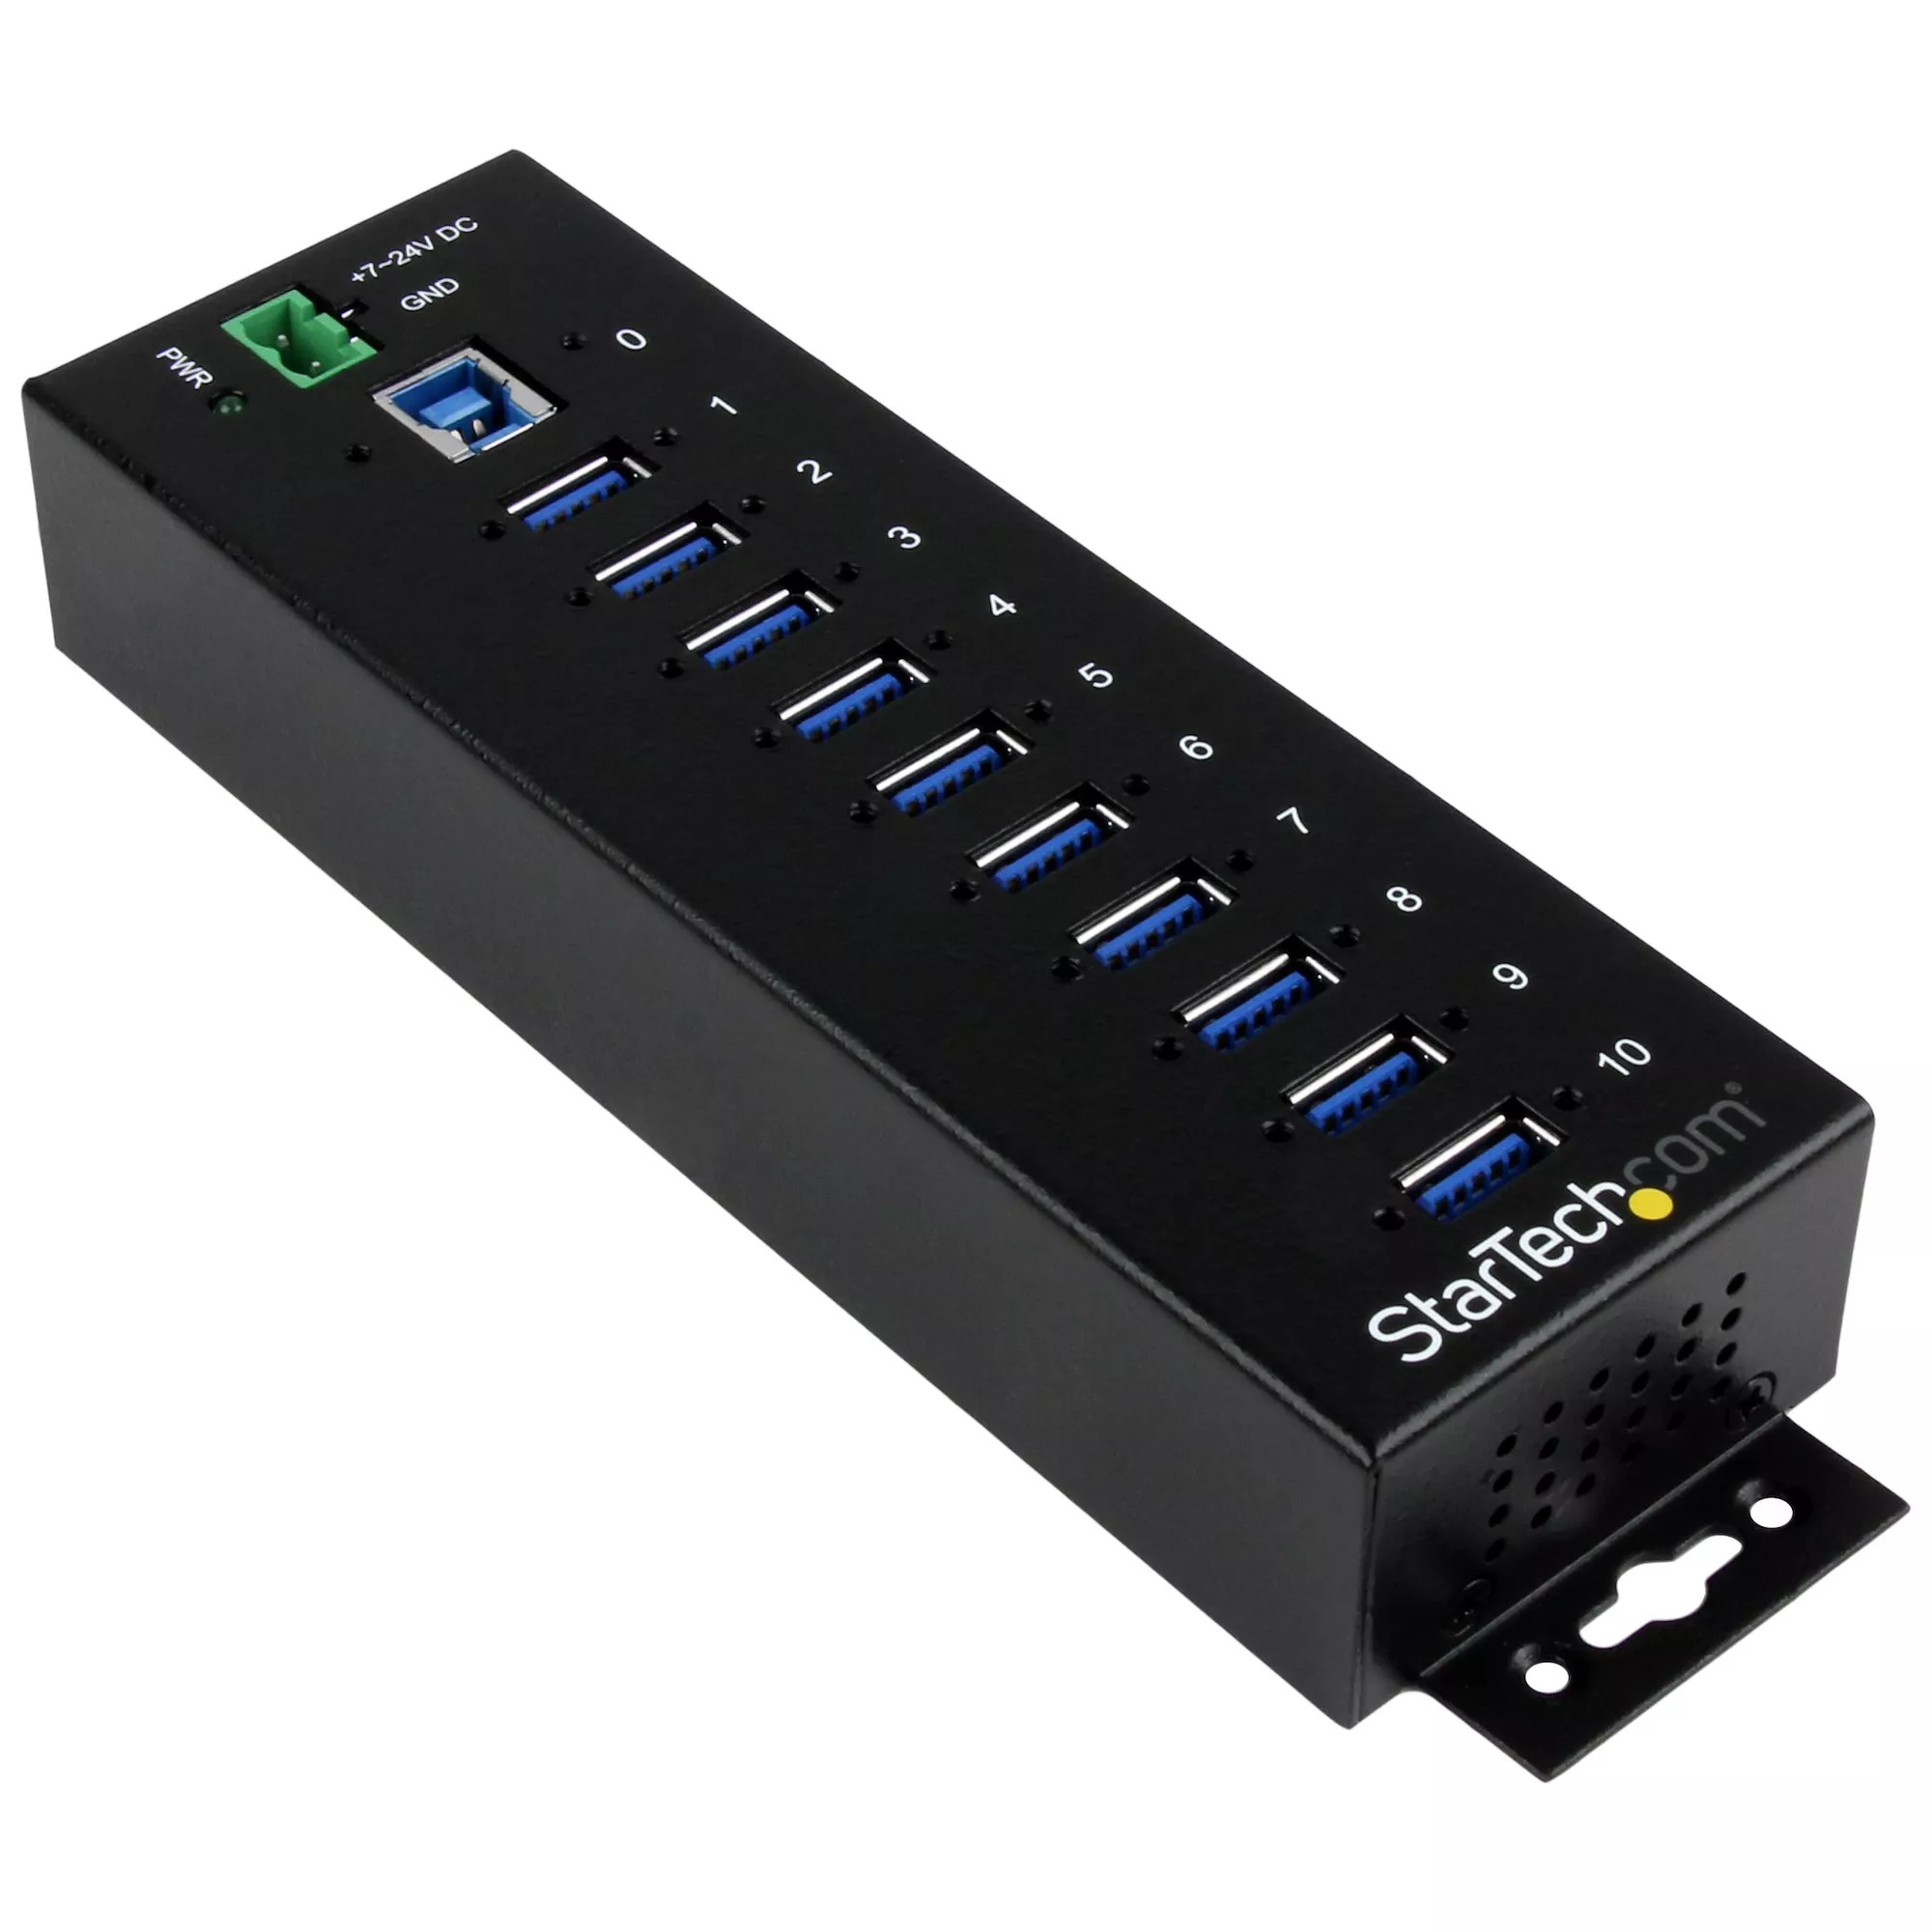 Revendeur officiel Câble USB StarTech.com Concentrateur USB 3.0 10 ports - 5Gbps